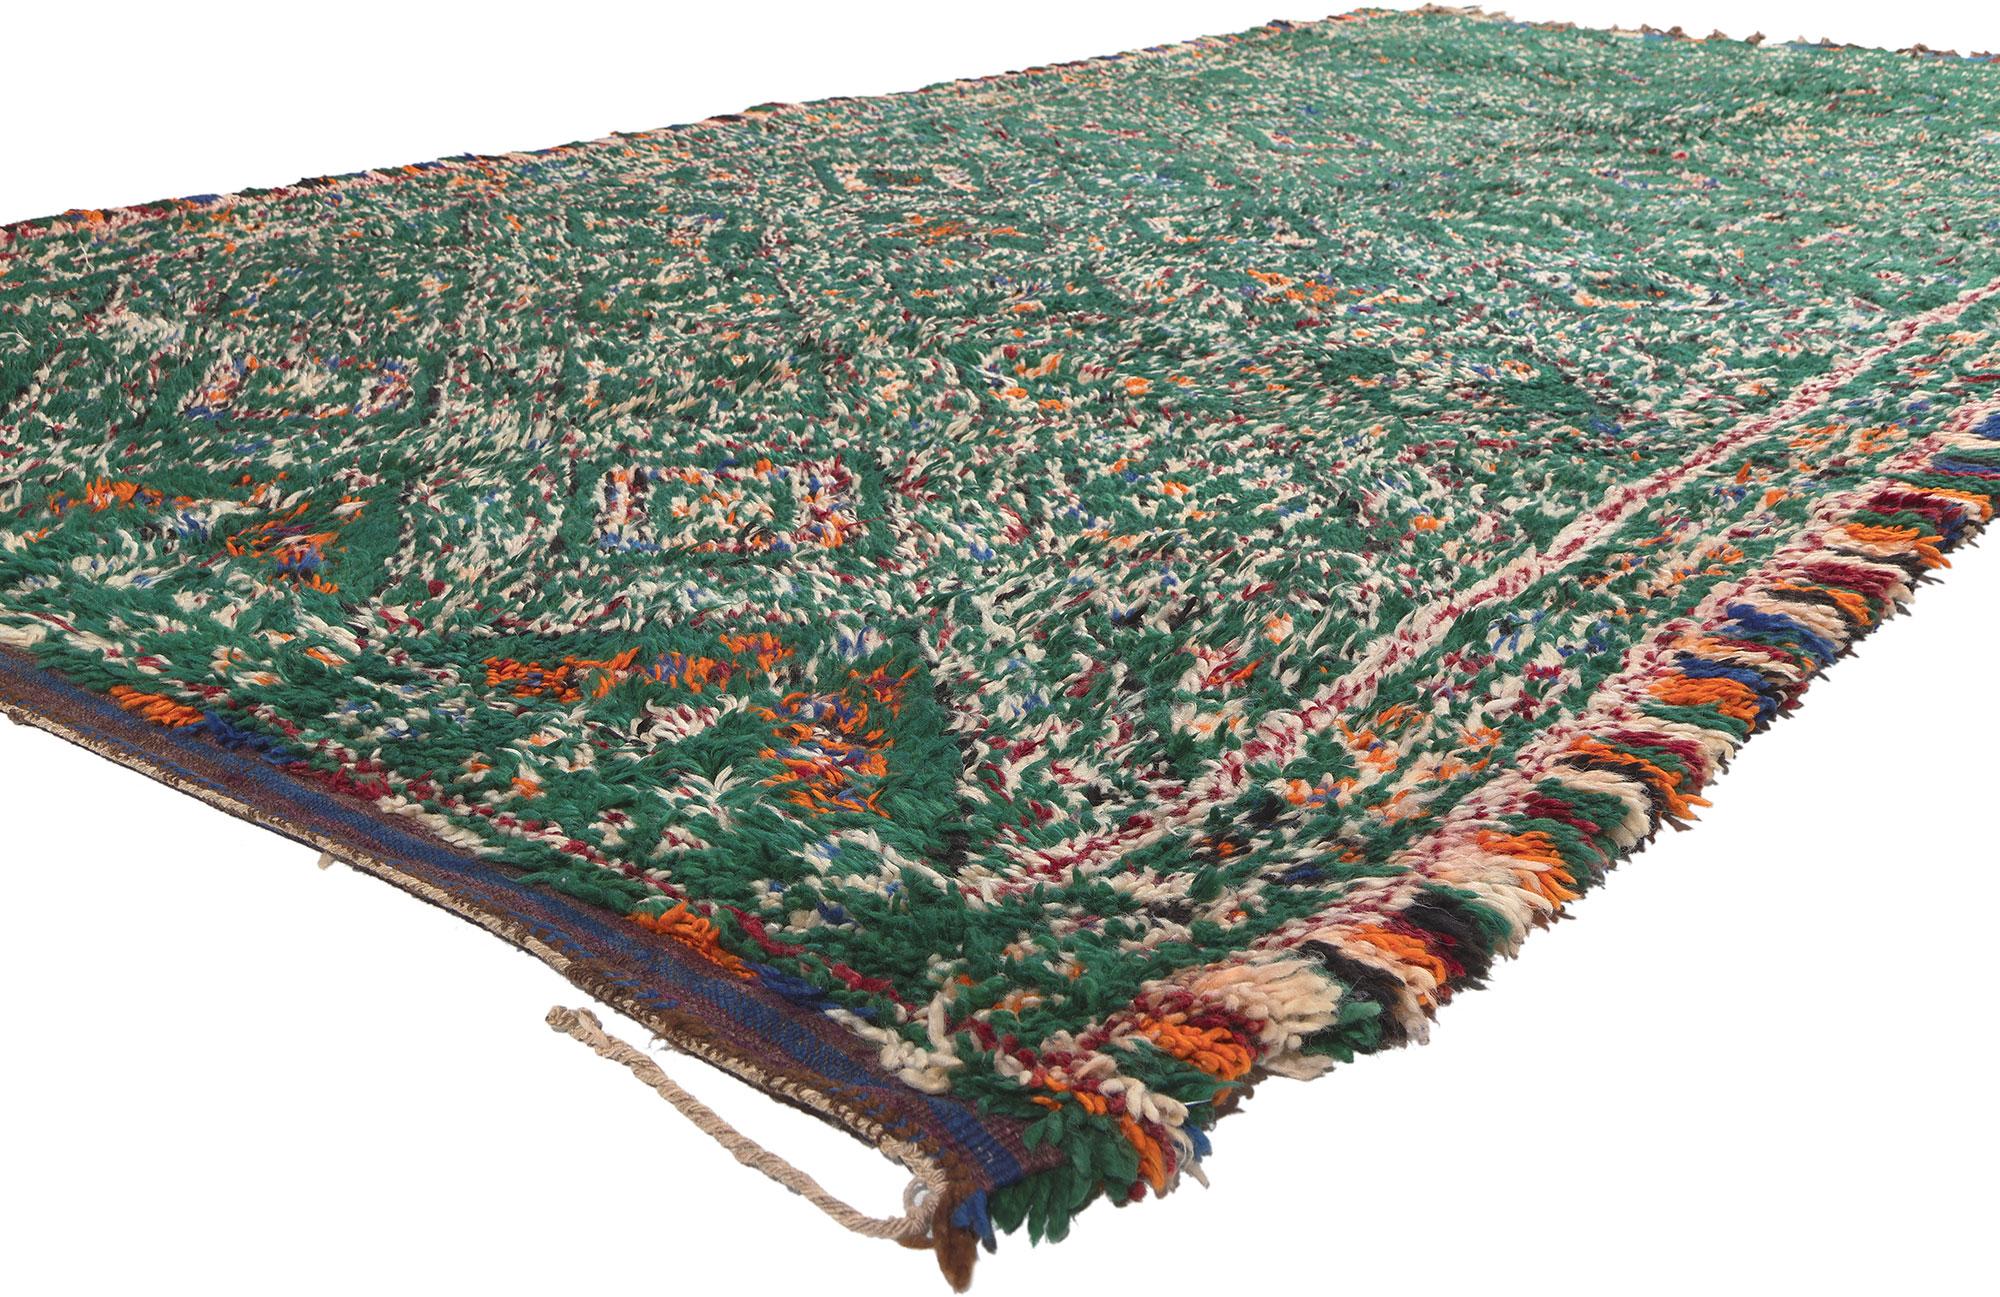 20662 Tapis marocain Beni MGuild vert vintage, 06'05 x 12'06. Les tapis Beni Mguild sont fabriqués par des femmes berbères de la tribu des Ait M'Guild dans les montagnes de l'Atlas au Maroc. Ils sont fabriqués en laine de haute qualité selon